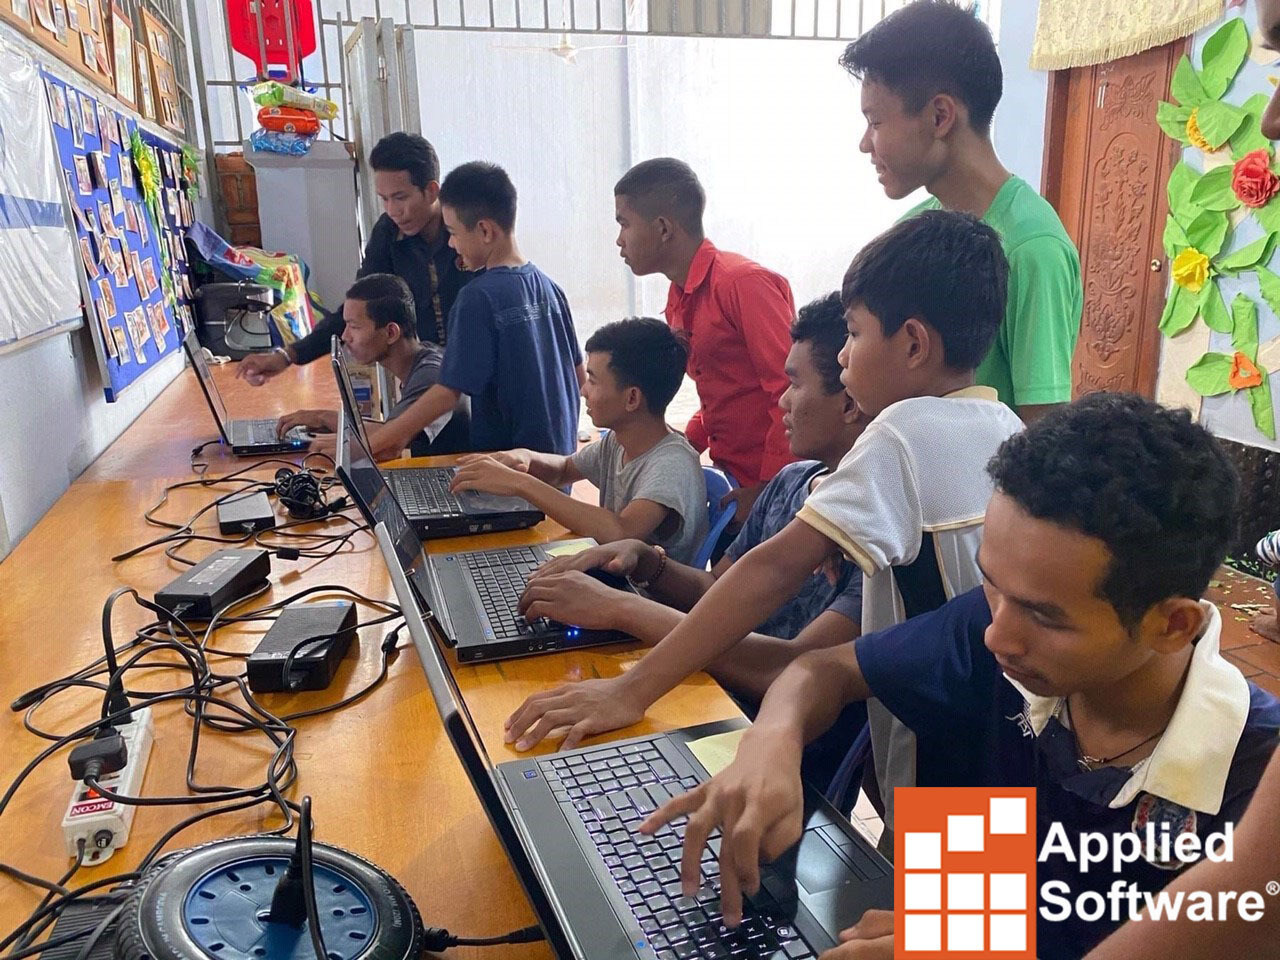 柬埔寨的电脑:社区服务项目